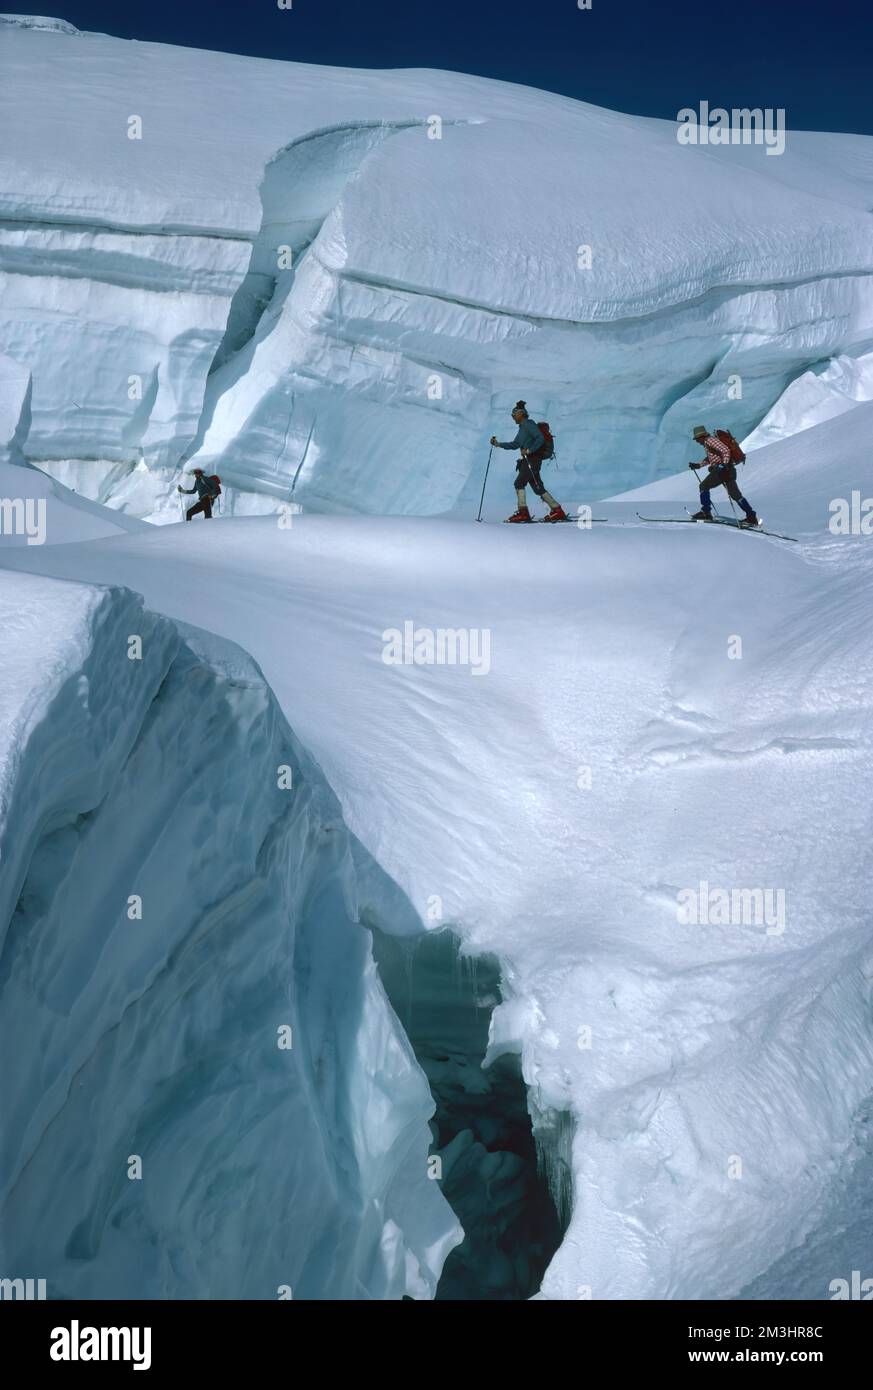 Skieurs alpins de haut niveau sur le chemin du sommet en hiver Oberland bernois en suisse Banque D'Images